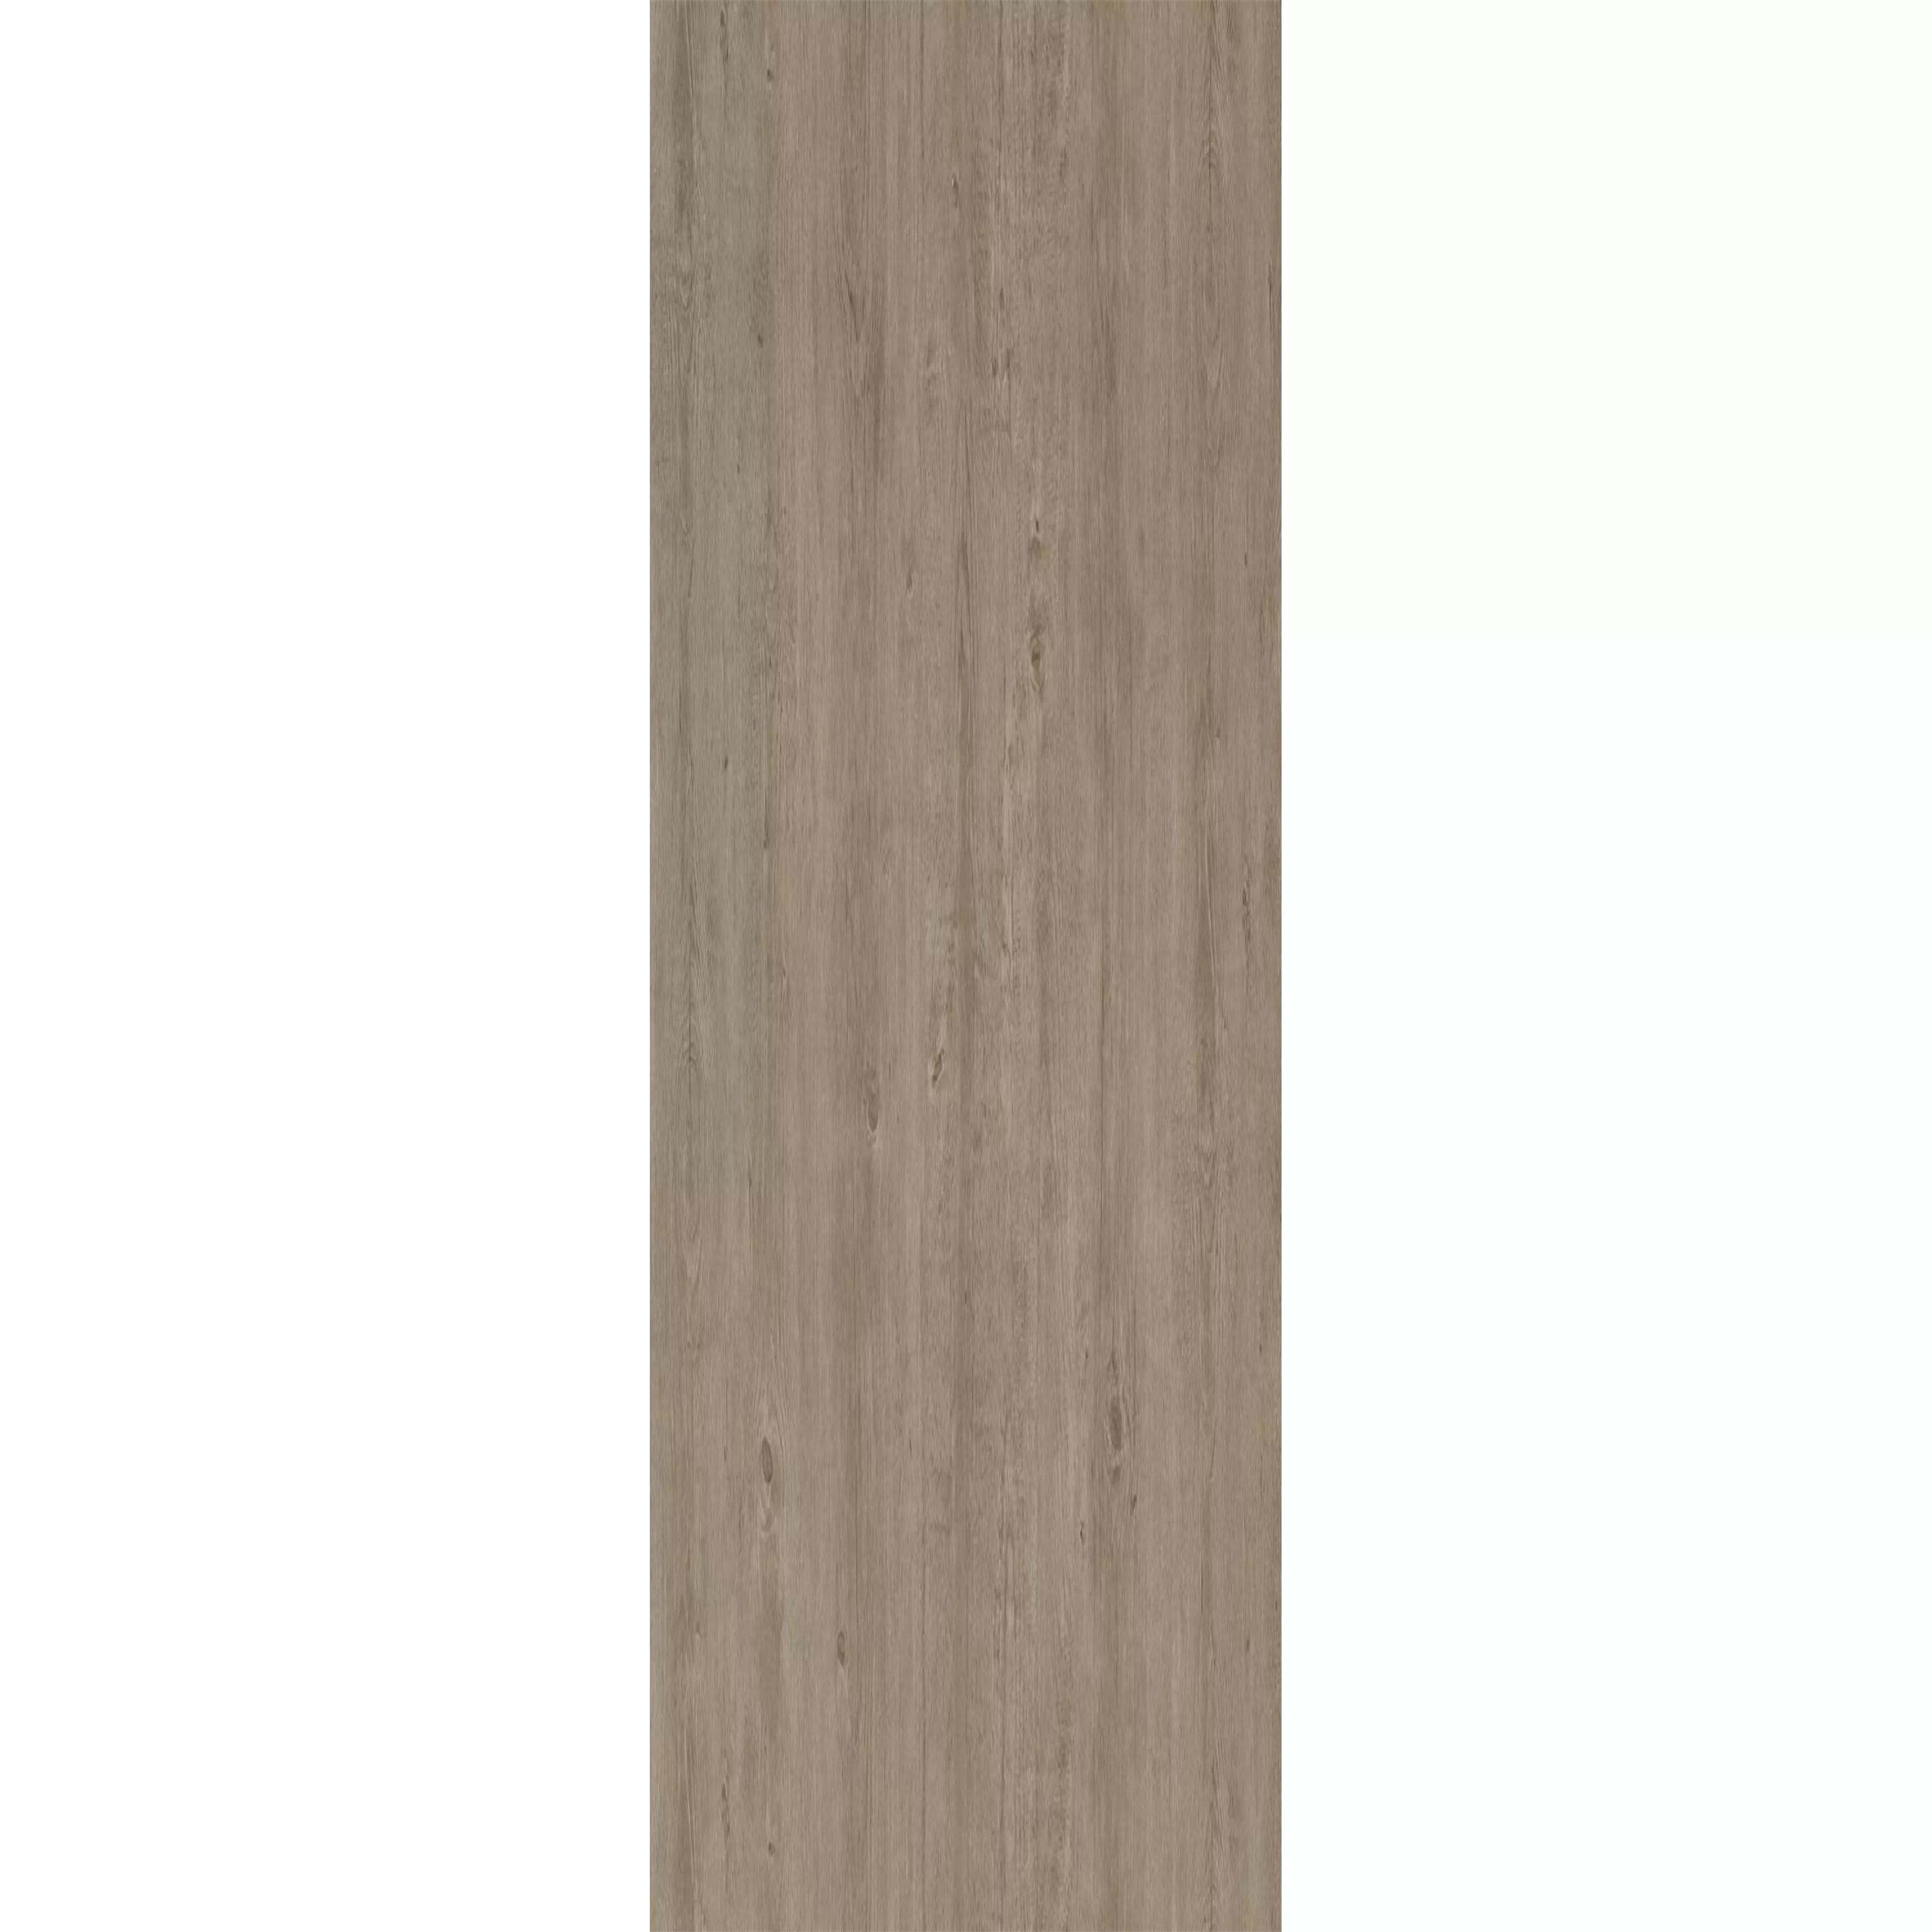 Δάπεδο Από Bινύλιο Σύστημα Κλικ Elderwood Μπεζ Γκρί 17,2x121cm